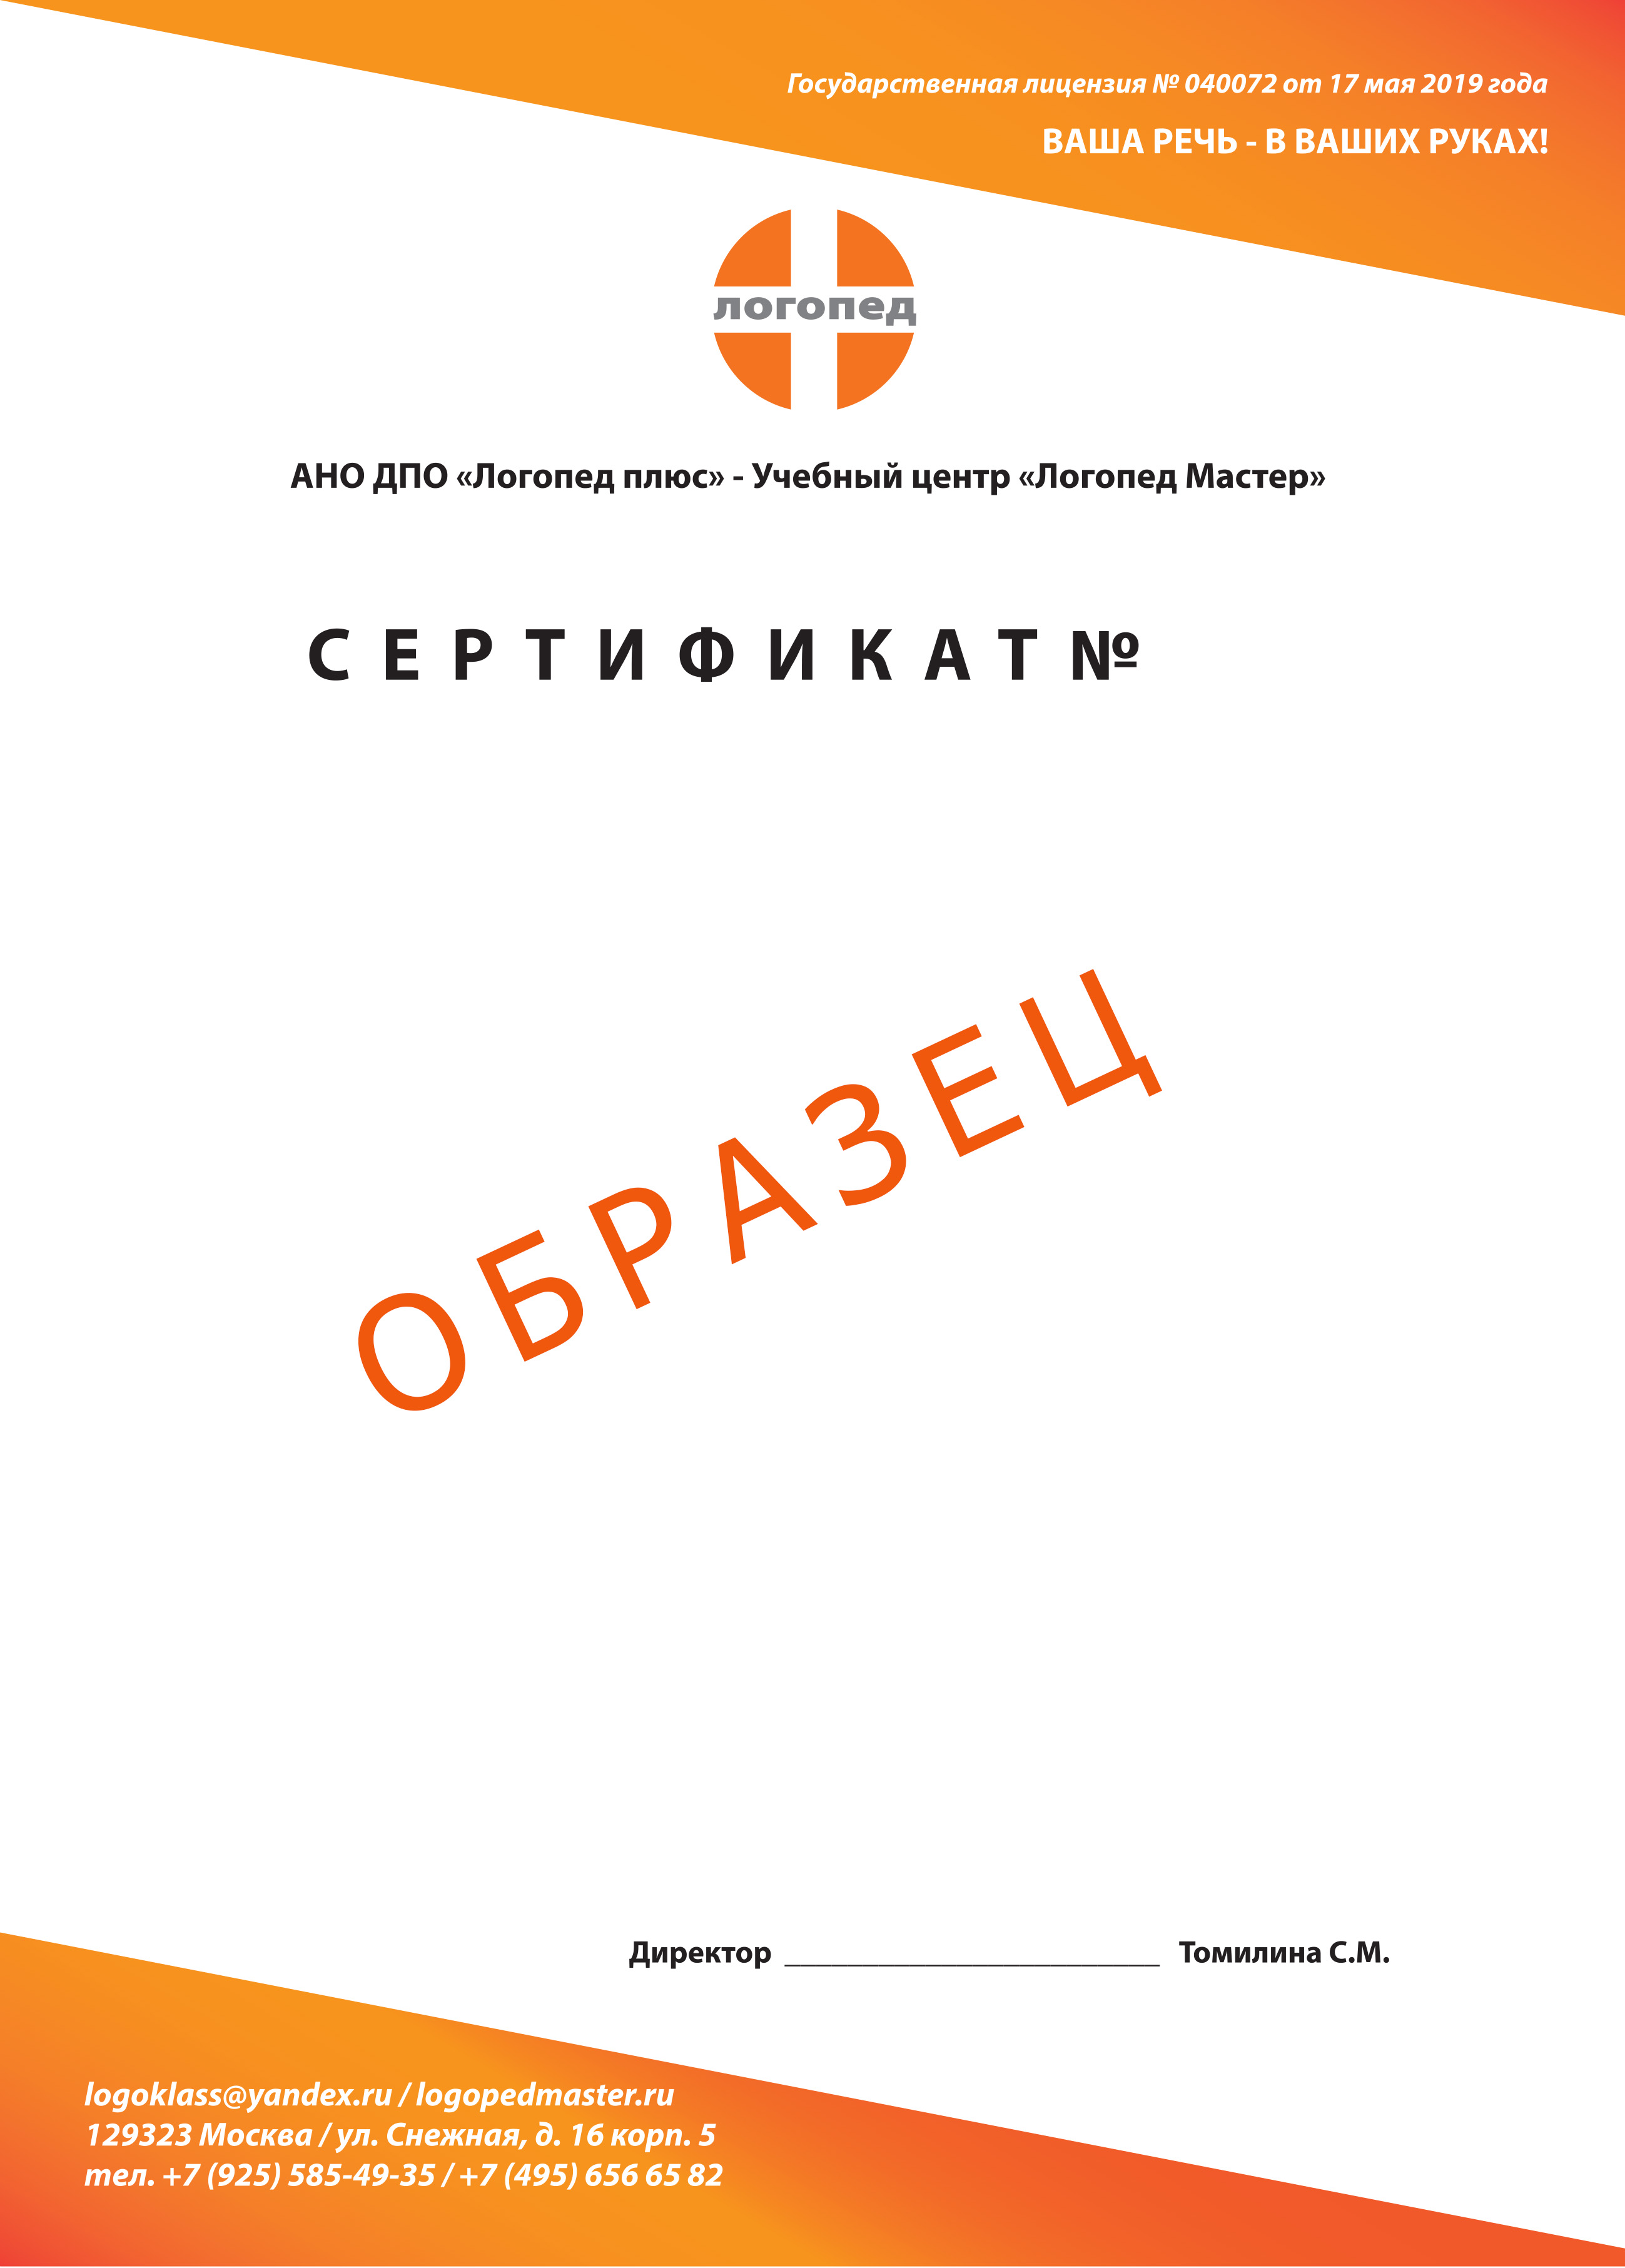 Сертификат о повышении квалификации логопедов